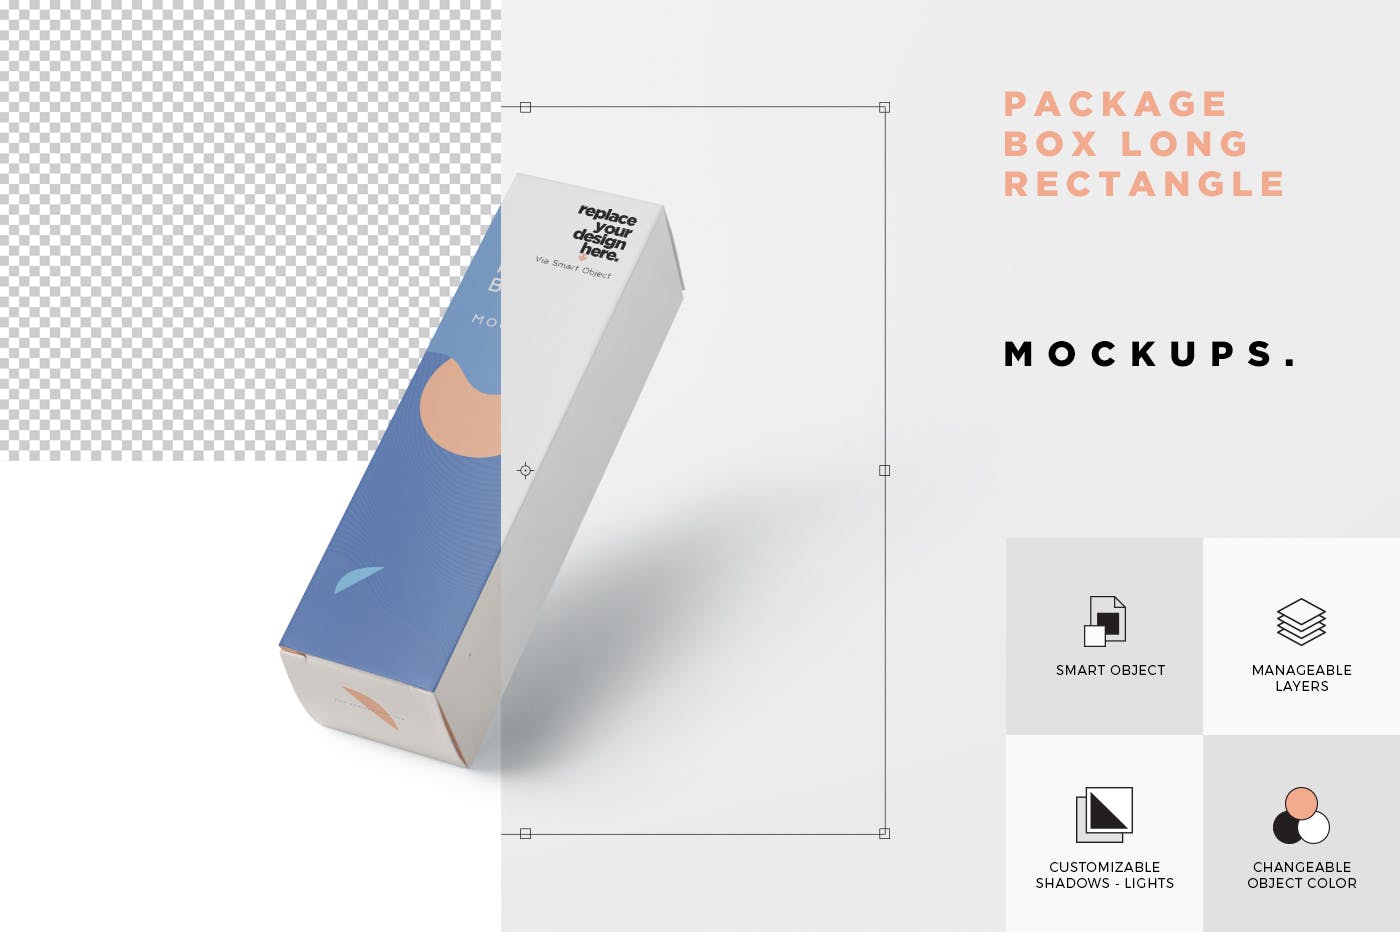 长矩形包装盒外观设计蚂蚁素材精选 Package Box Mock-Up – Long Rectangle Shape插图(4)